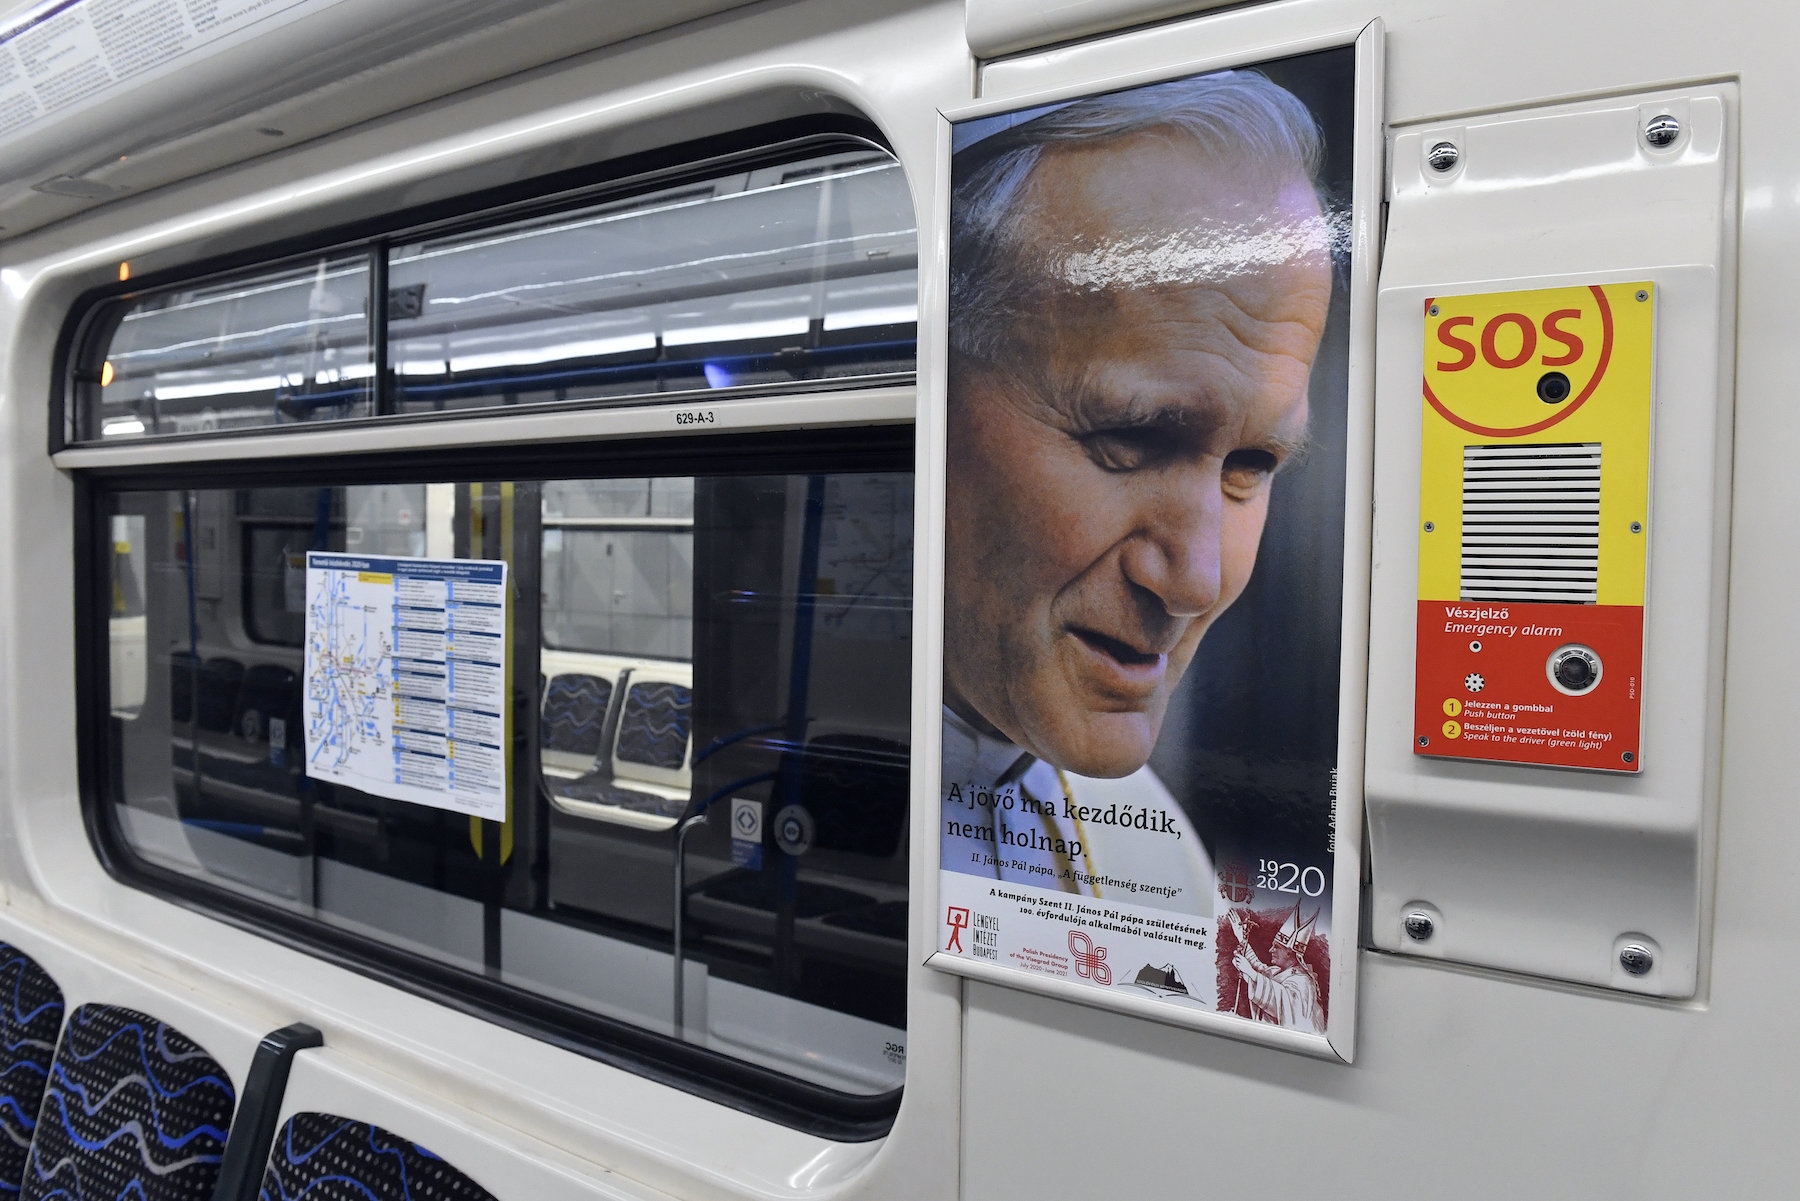 Szent II. János pápa poszterei egy hónapon át lesznek láthatóak a szerelvényekben